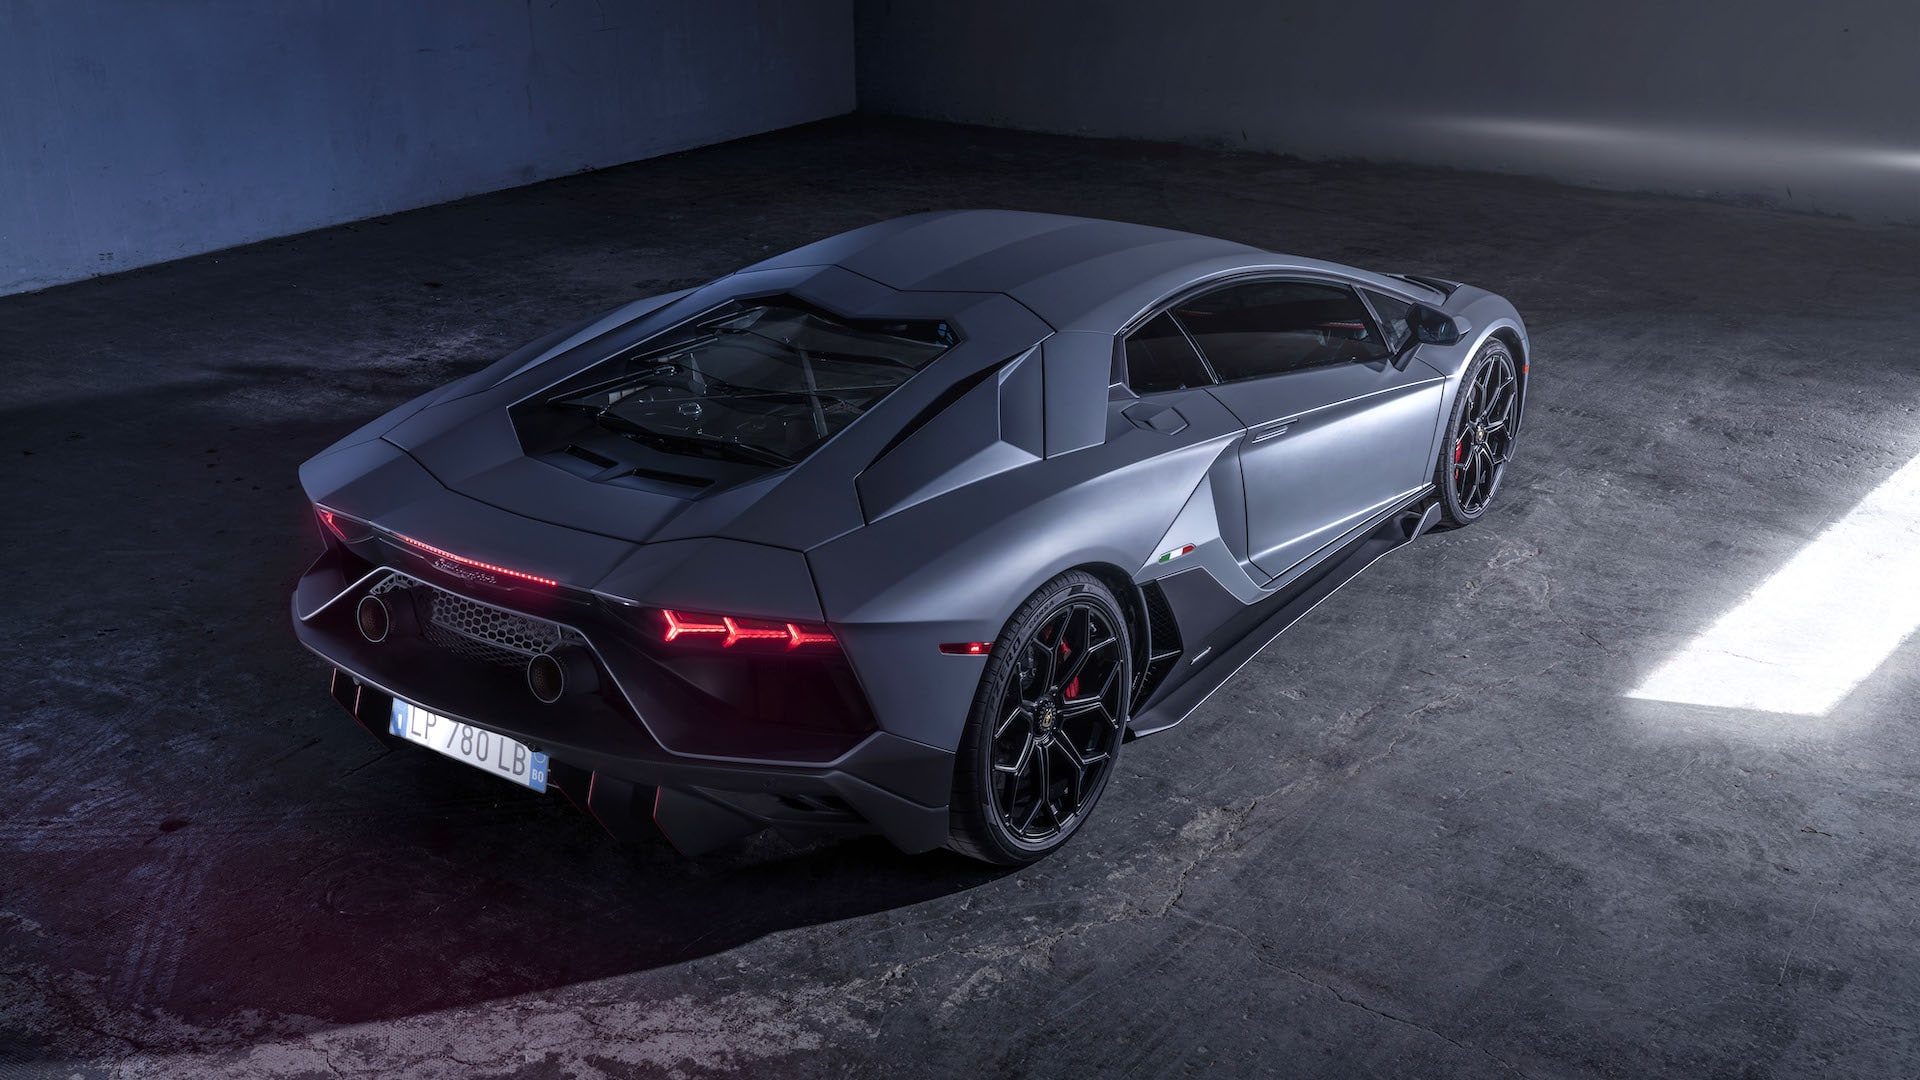 Lamborghini set for record sales in 2022